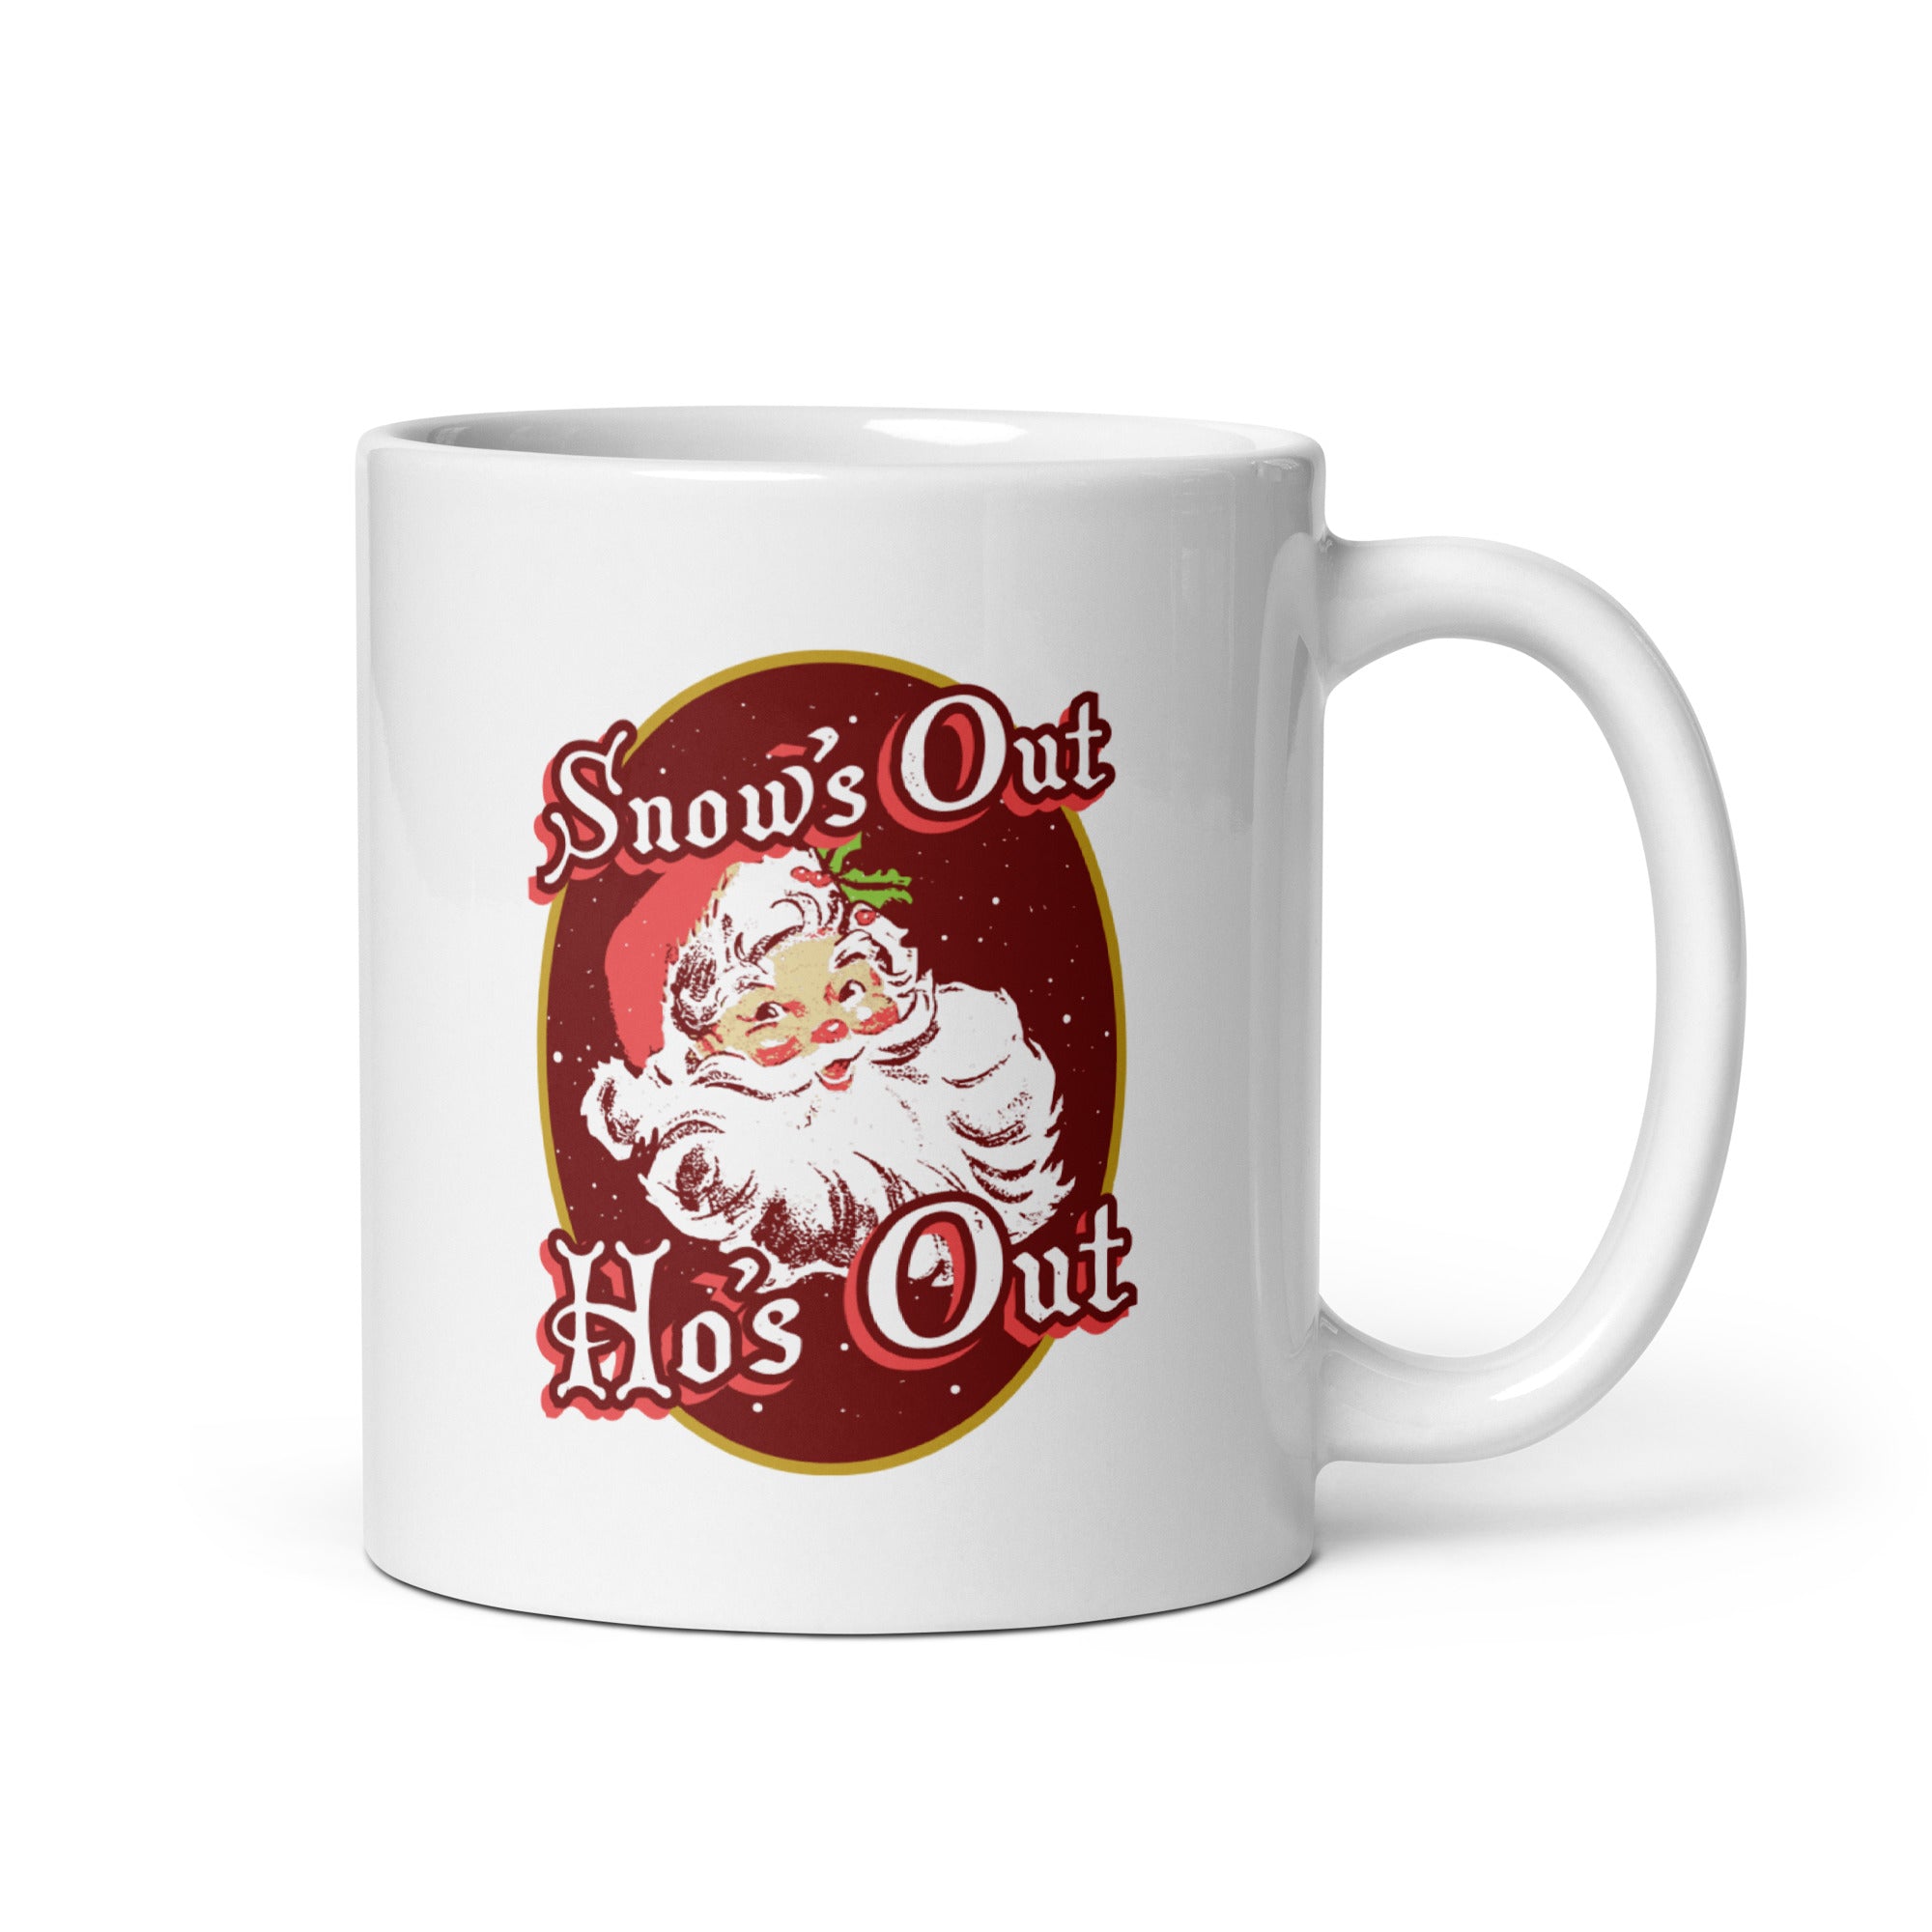 Snow's Out Ho's Out - 11oz Coffee Mug